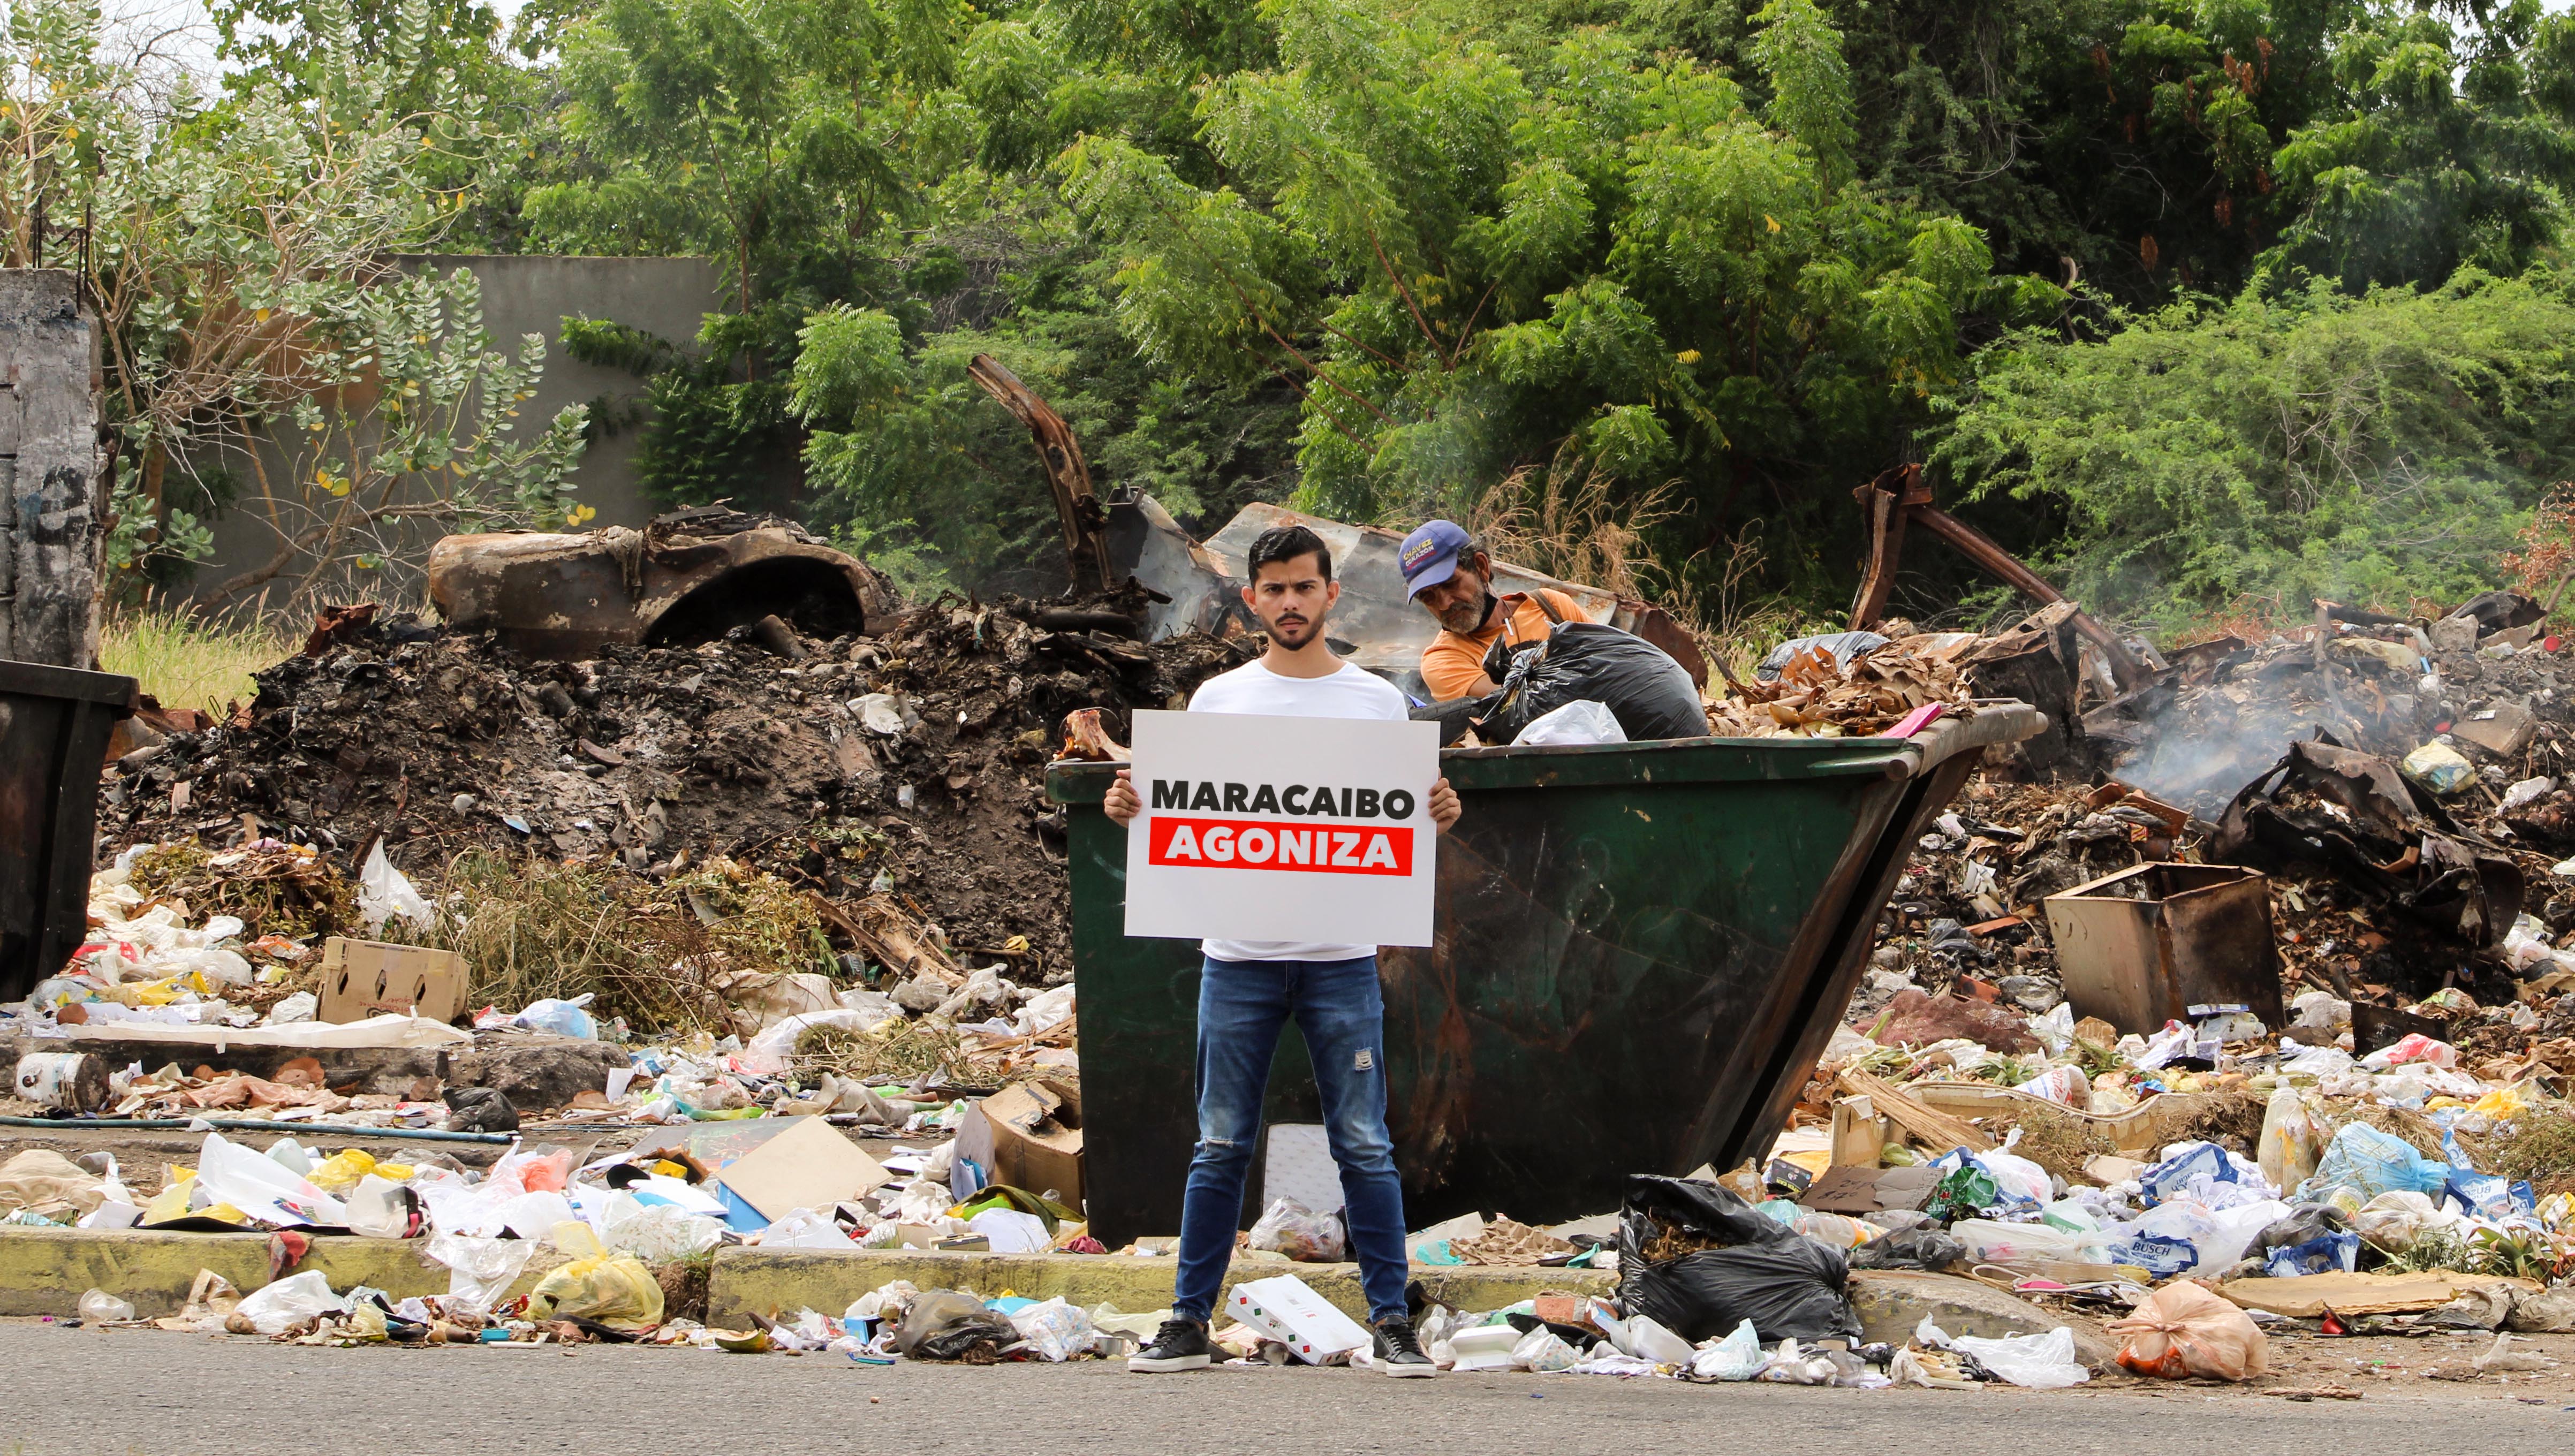 El caricaturista Franklin Paz denunció la acumulación de desechos sólidos: Maracaibo agoniza entre la basura (Fotos)